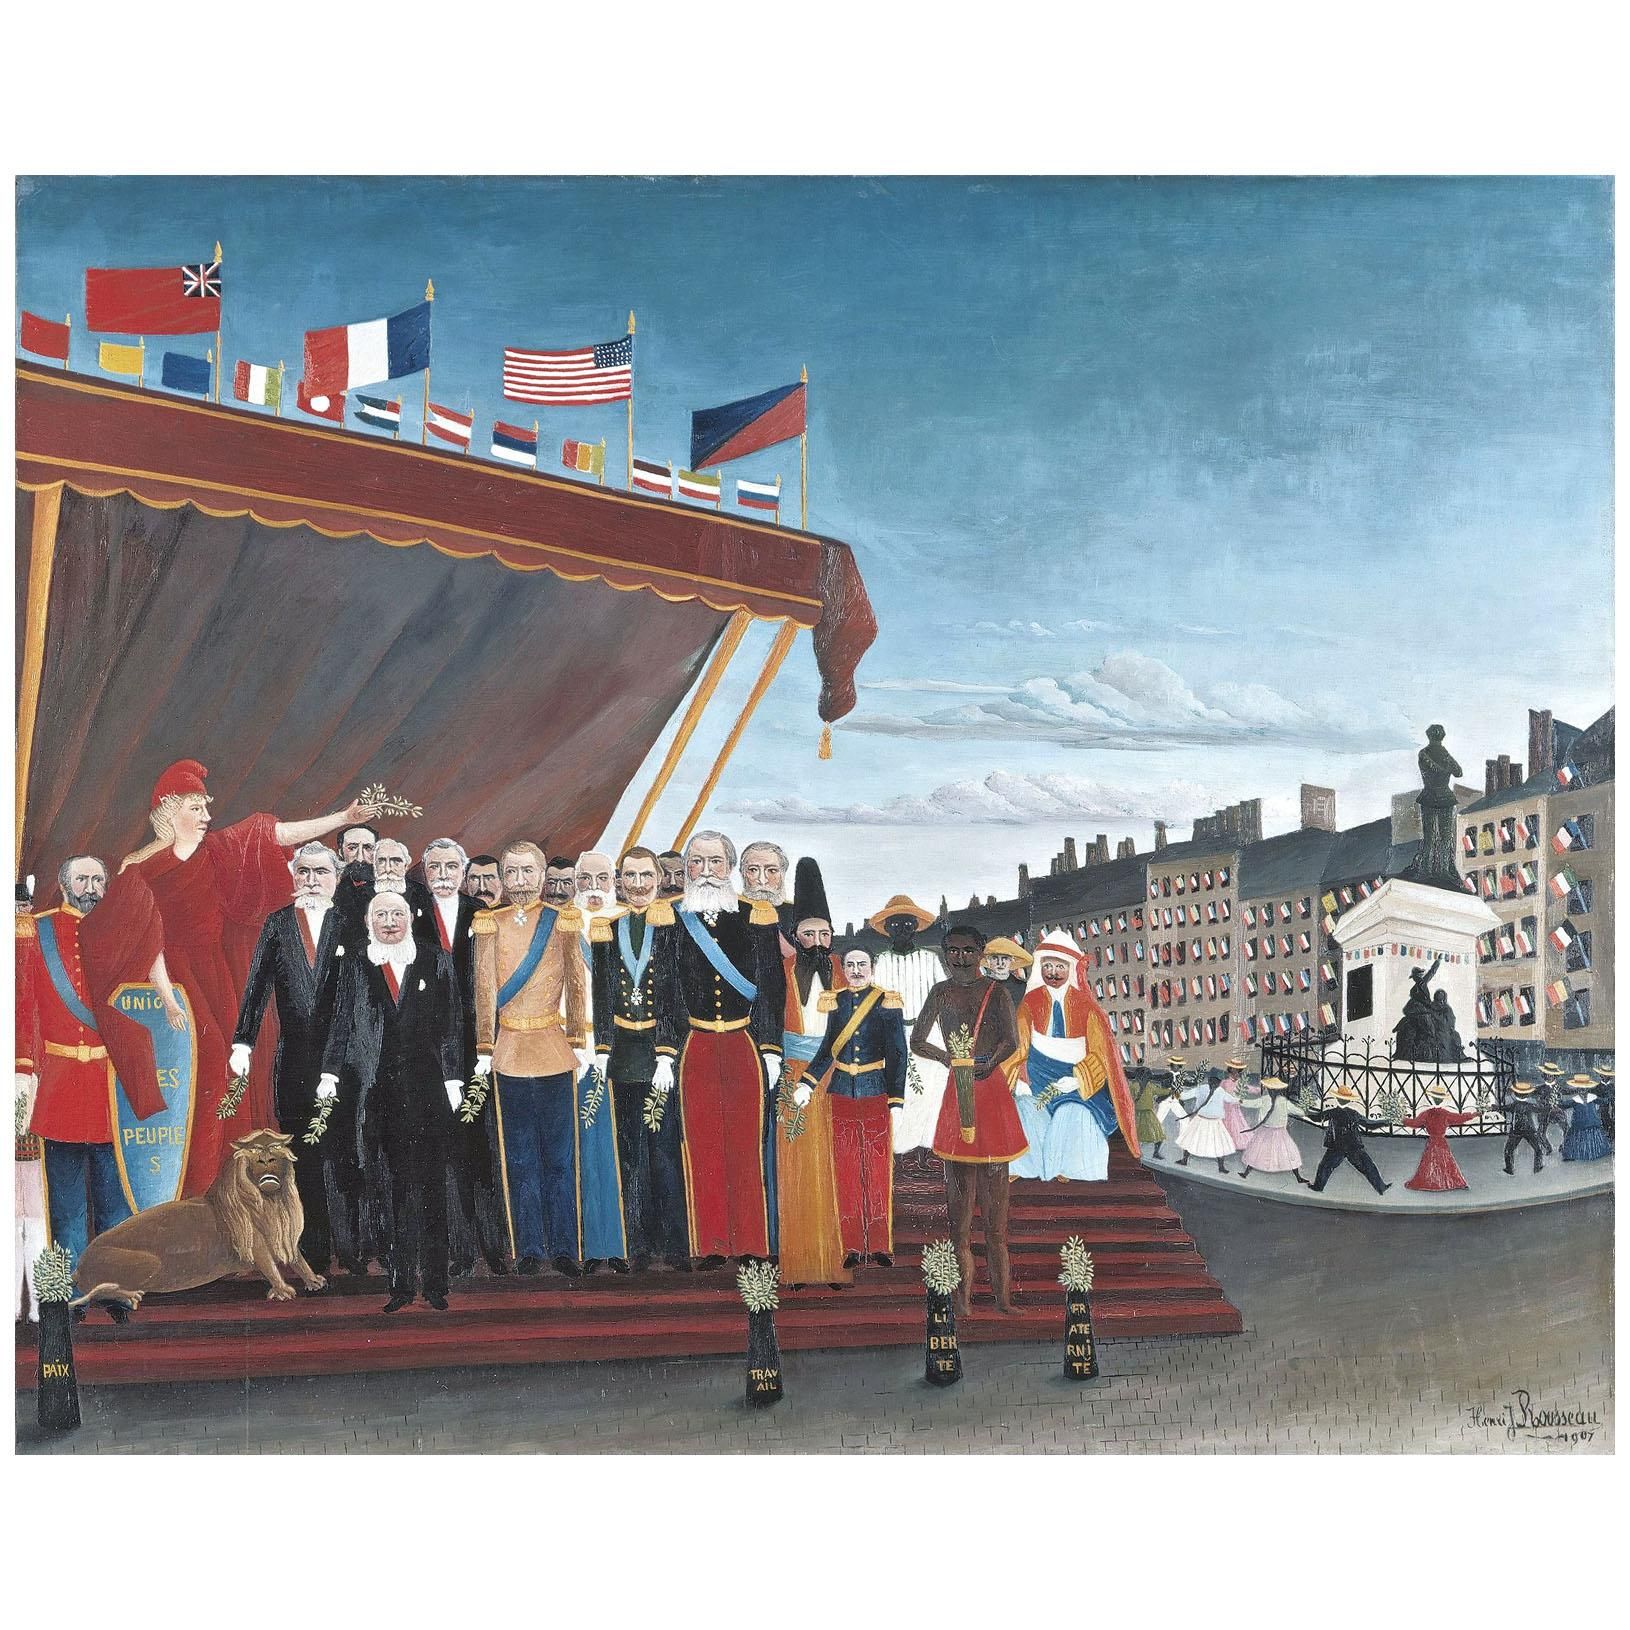 Henri Rousseau. Signe de paix. 1907. Musee Picasso Paris